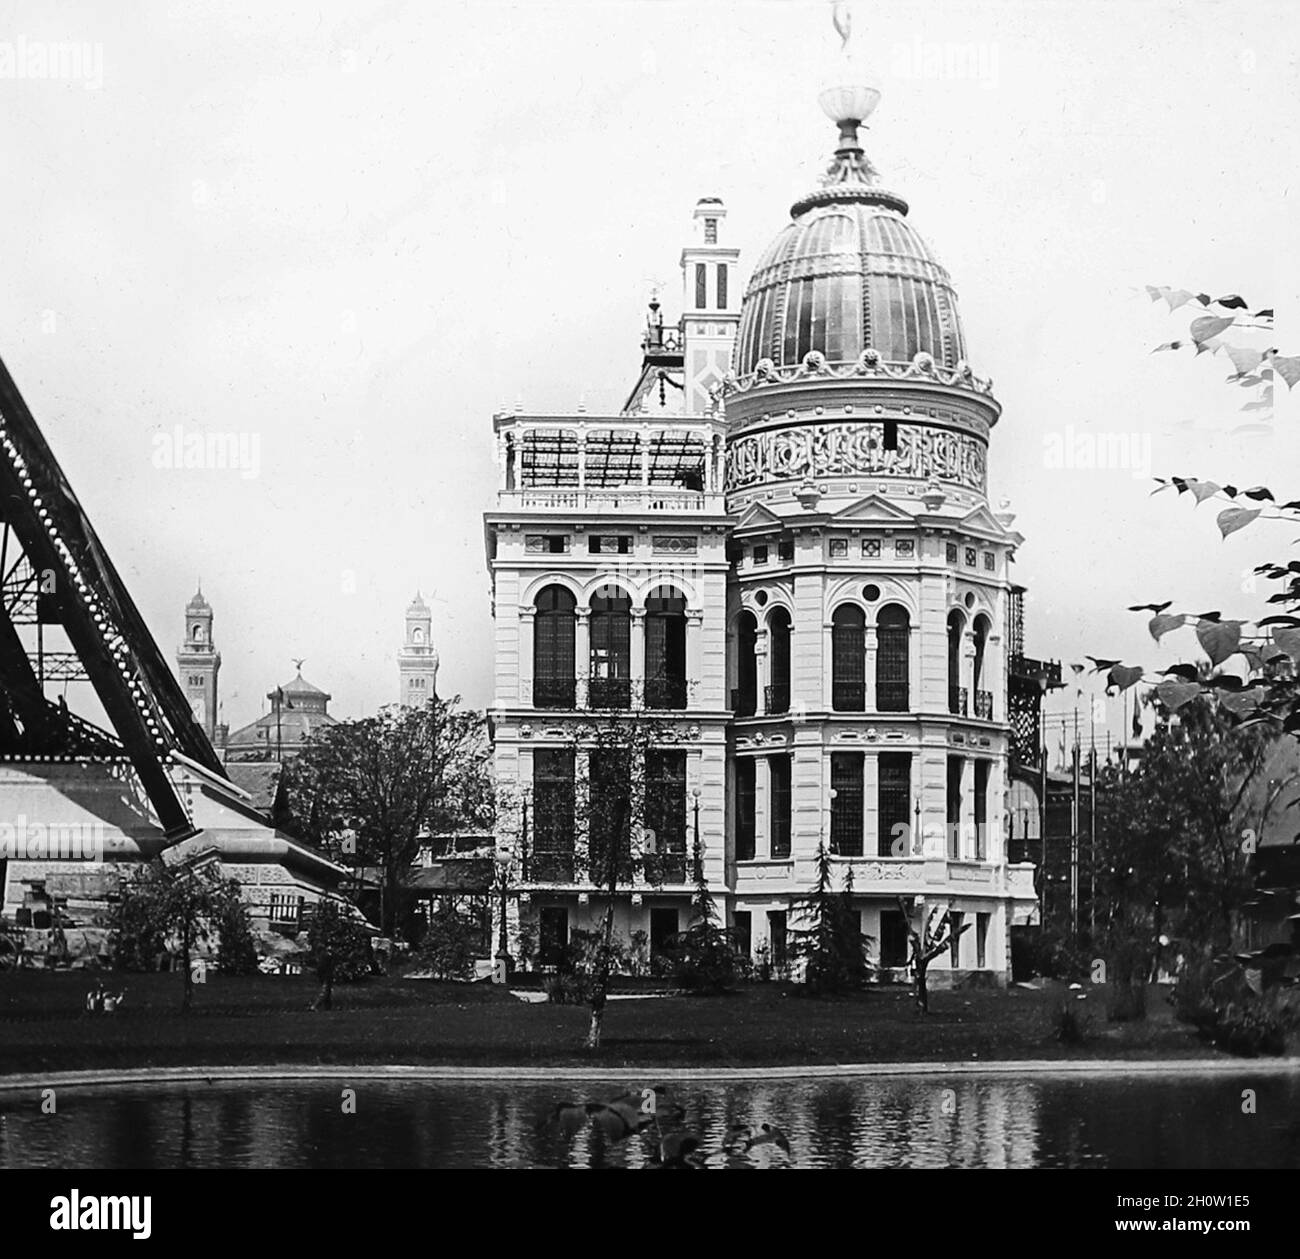 The Gas Pavilion, 1889 Exposition Universelle, Paris, France Stock ...